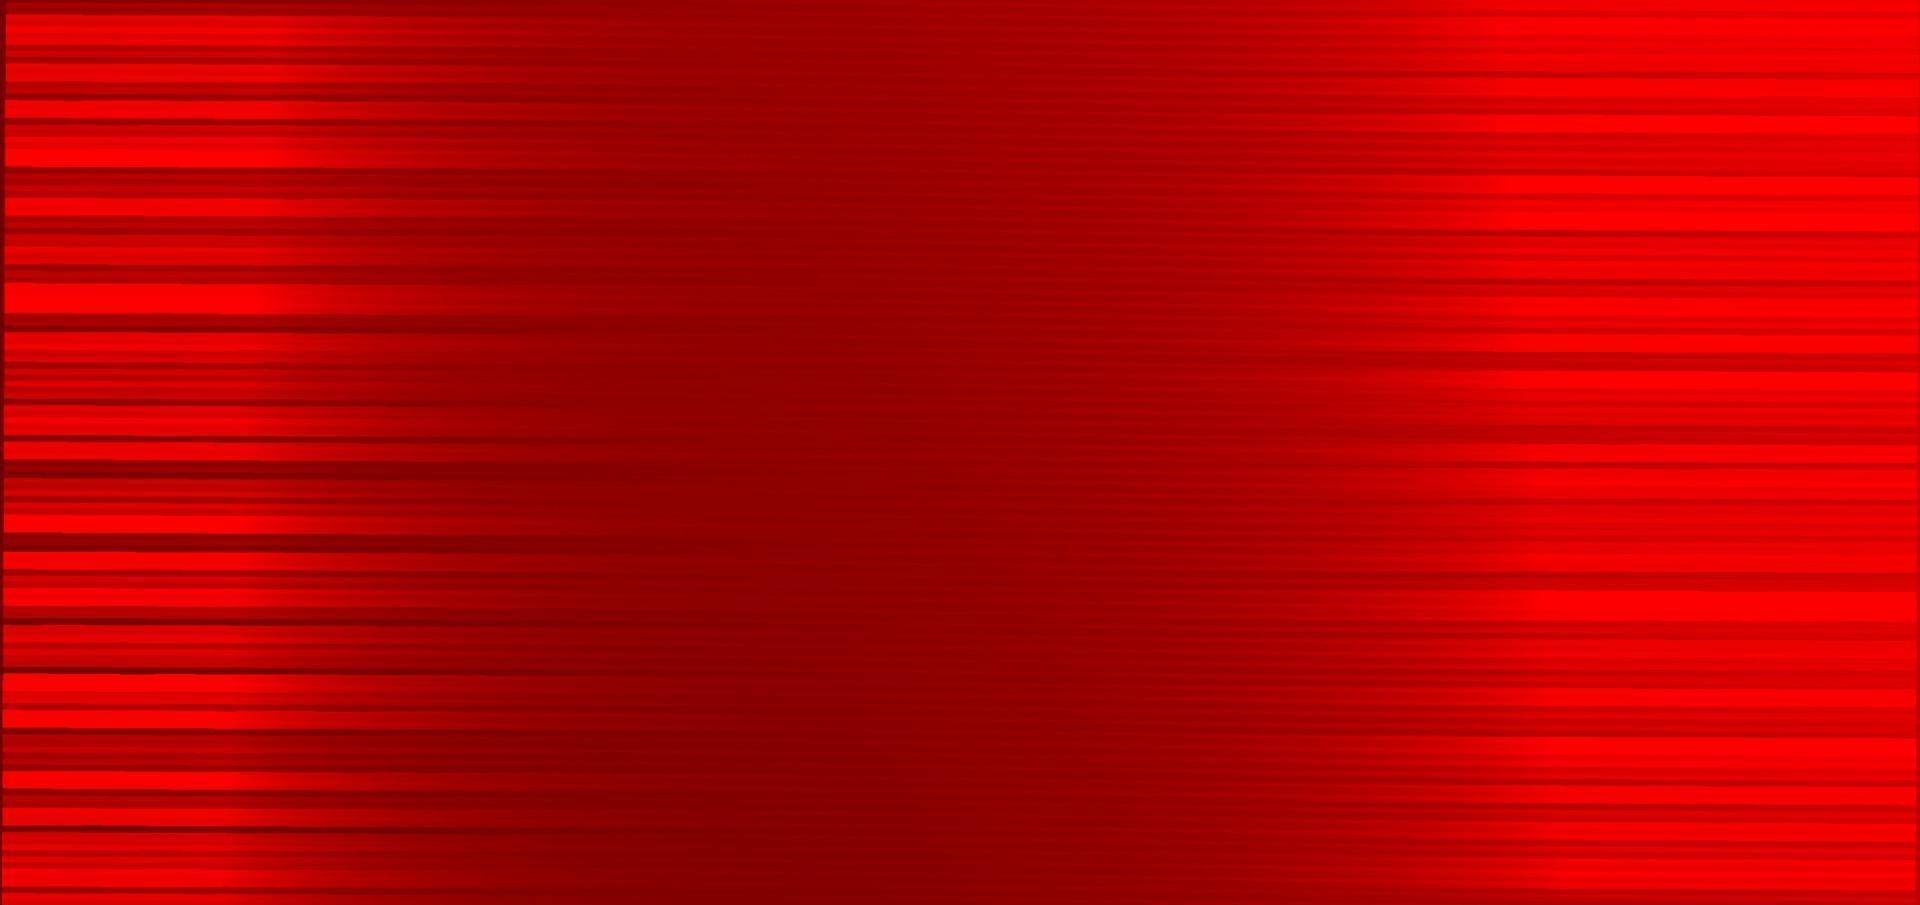 abstract horizontaal lijnpatroon op rode achtergrond. vector